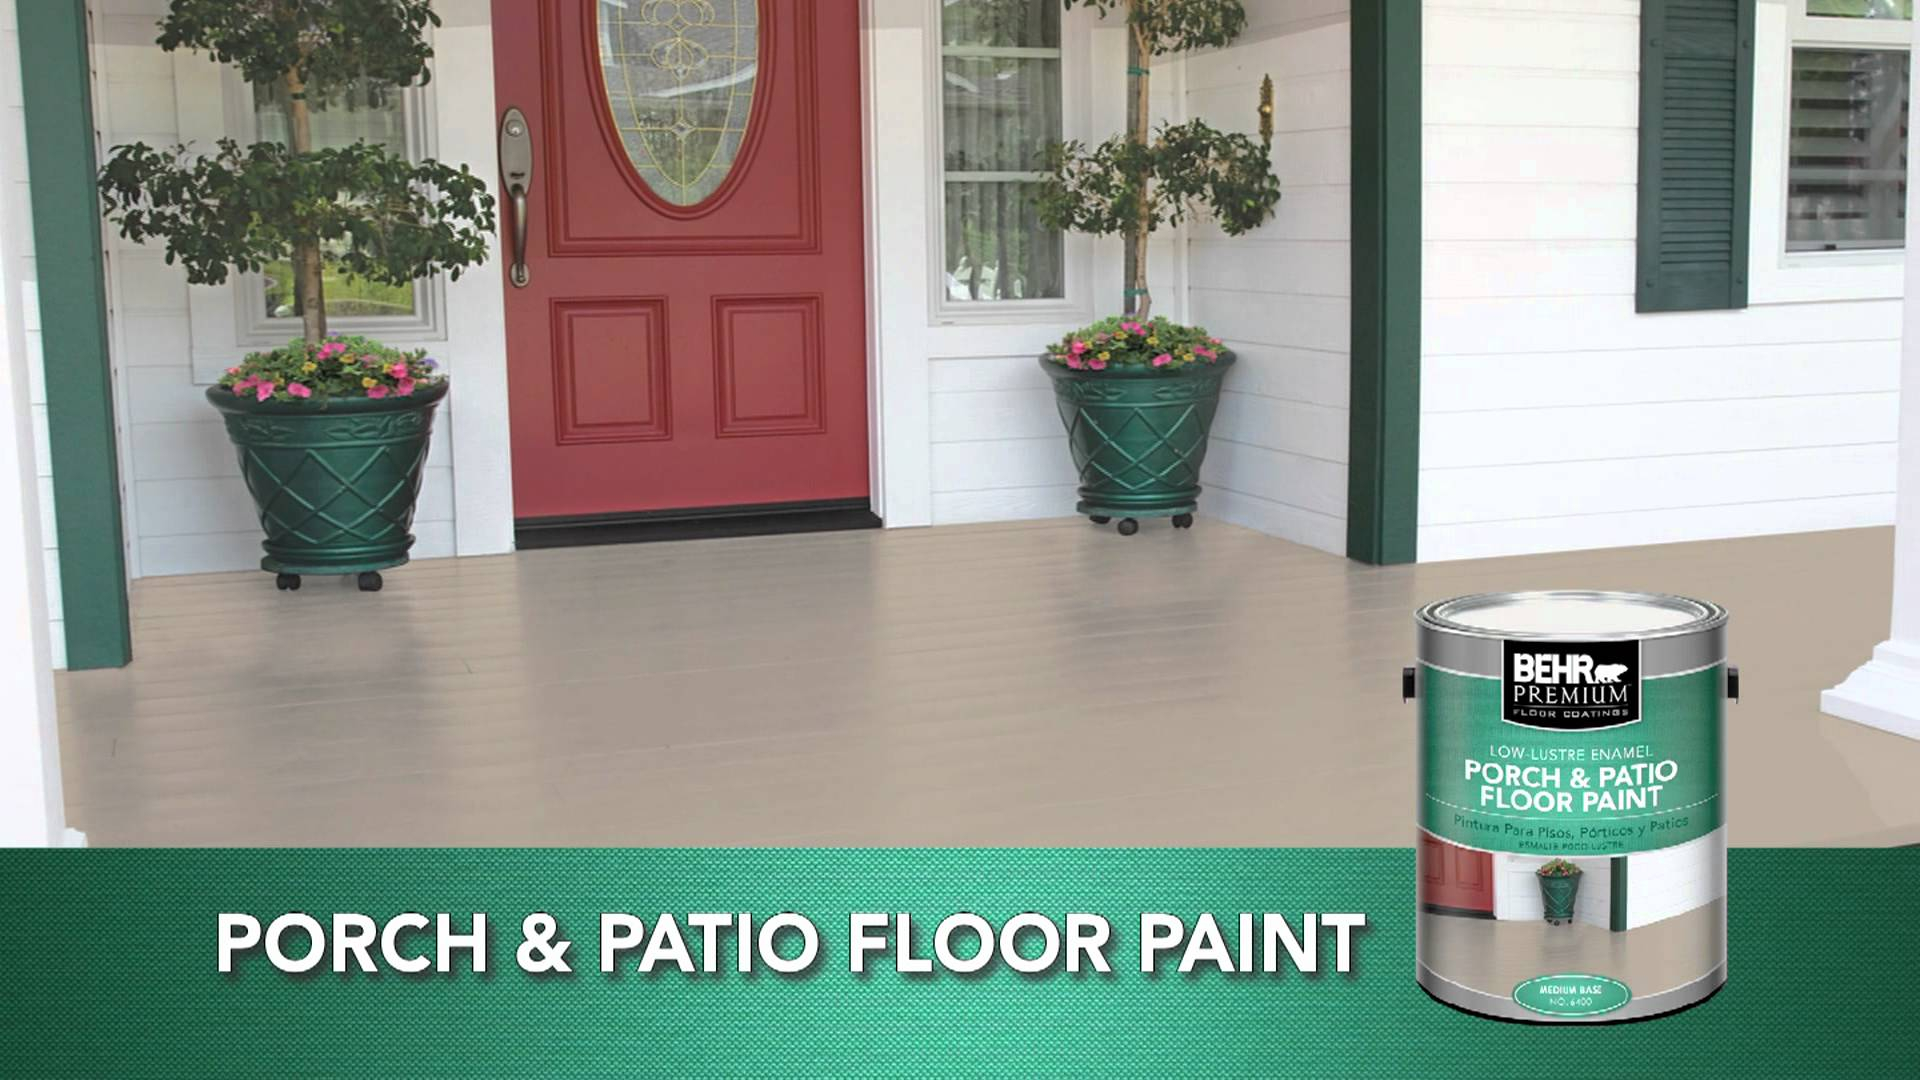 Behr Premium Low Lustre Gloss Enamel Porch Patio Floor Paint for dimensions 1920 X 1080